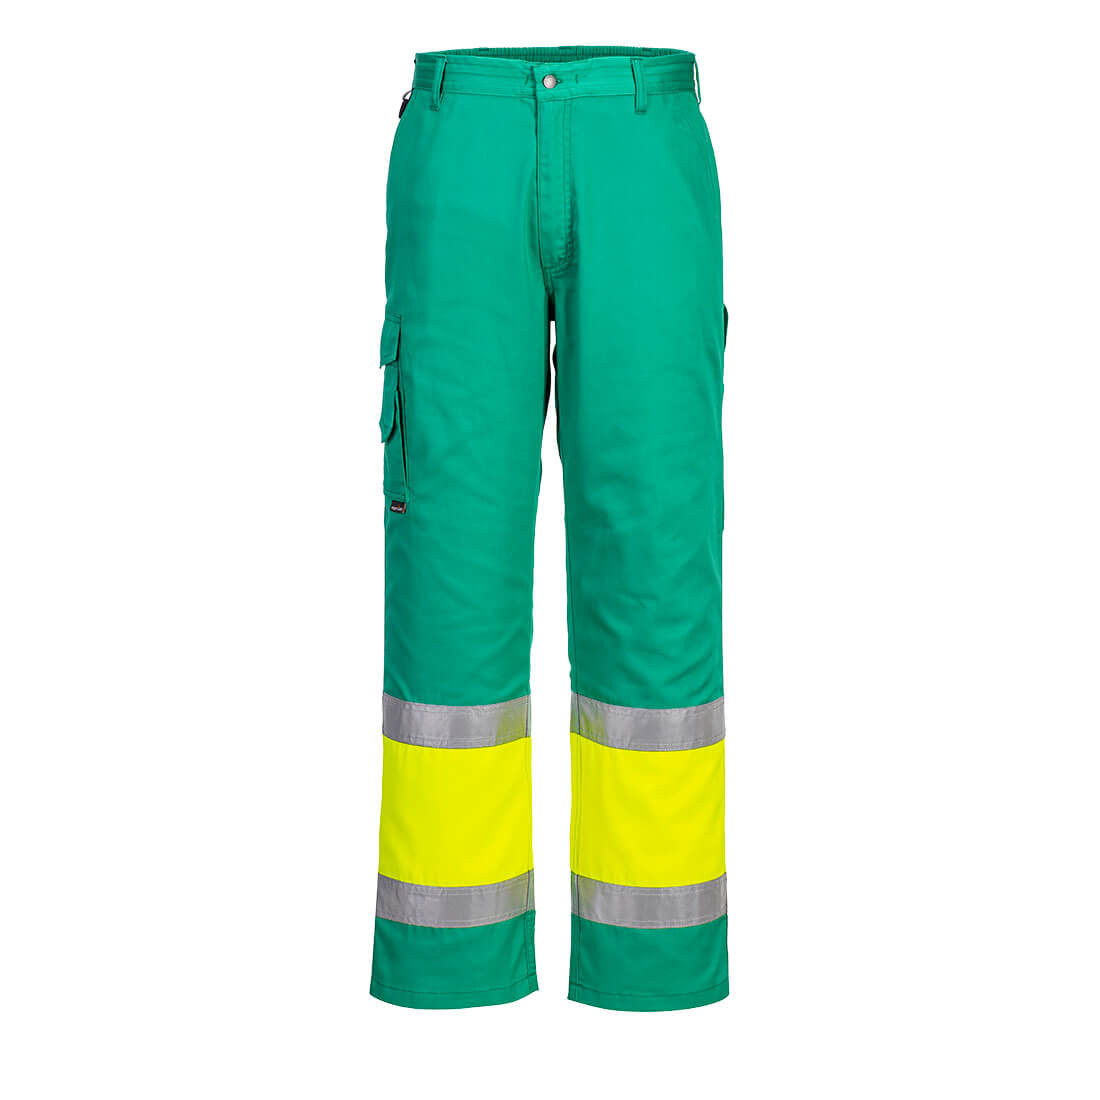 Pantalon combat Hi-Vis Bicolore - Les vêtements de protection